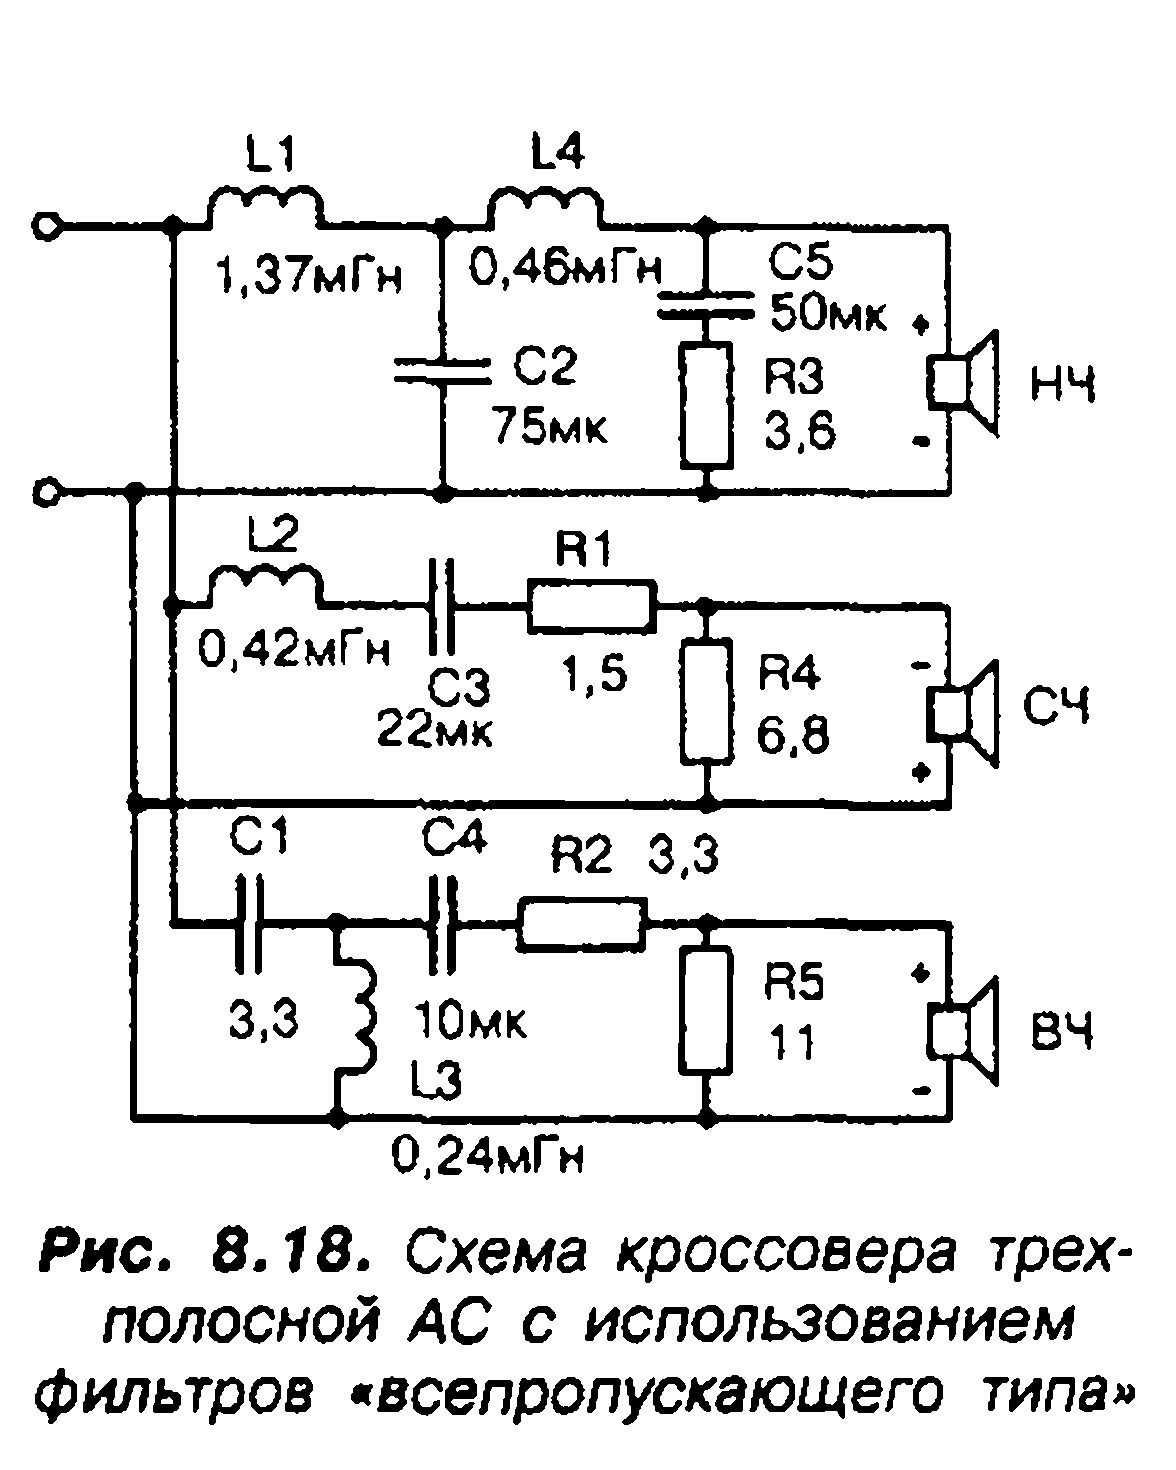 Схема подключения компонентной акустики с кроссовером